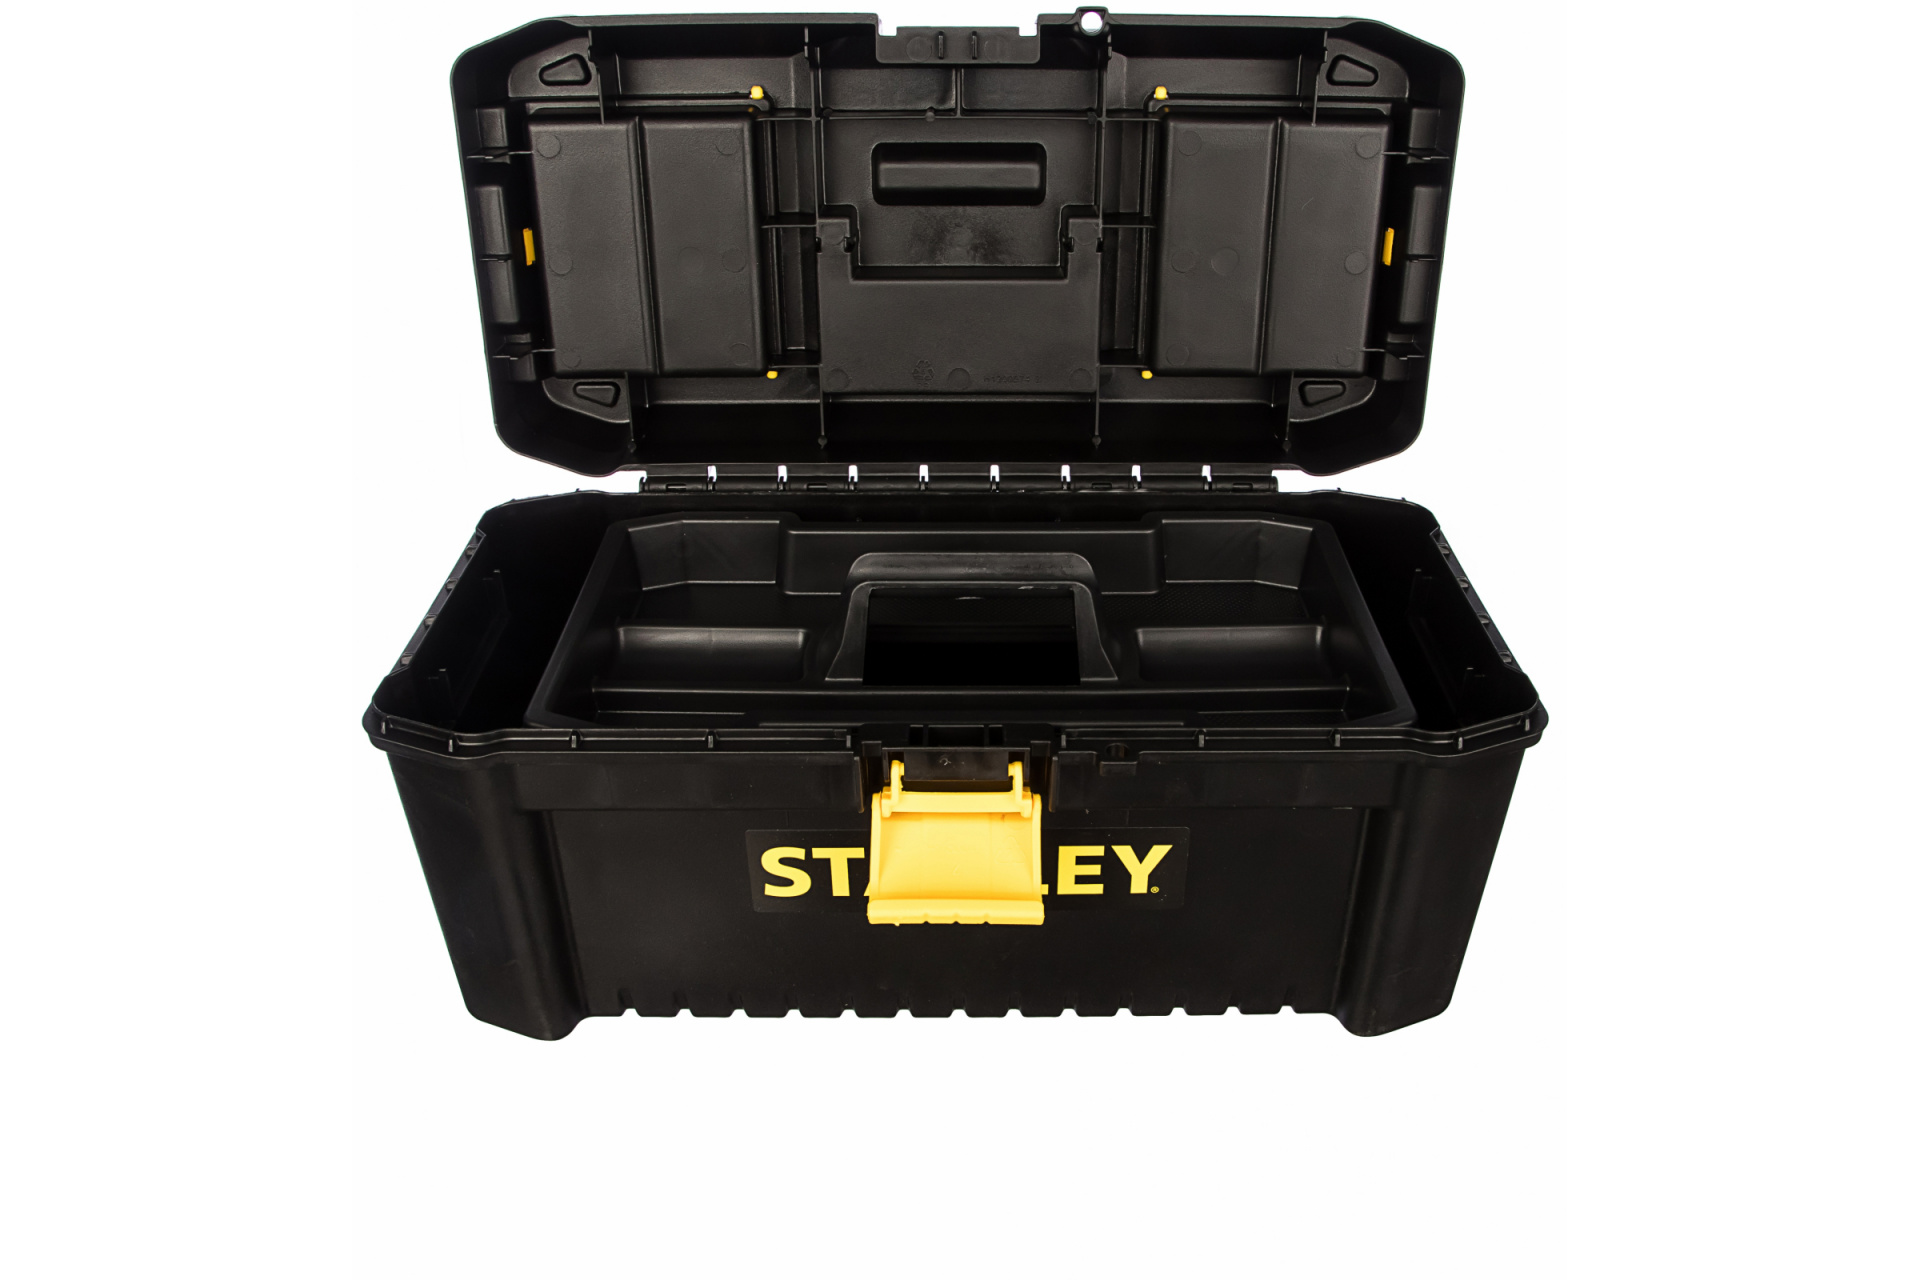 Ящик для инструмента STST1-75517 Stanley